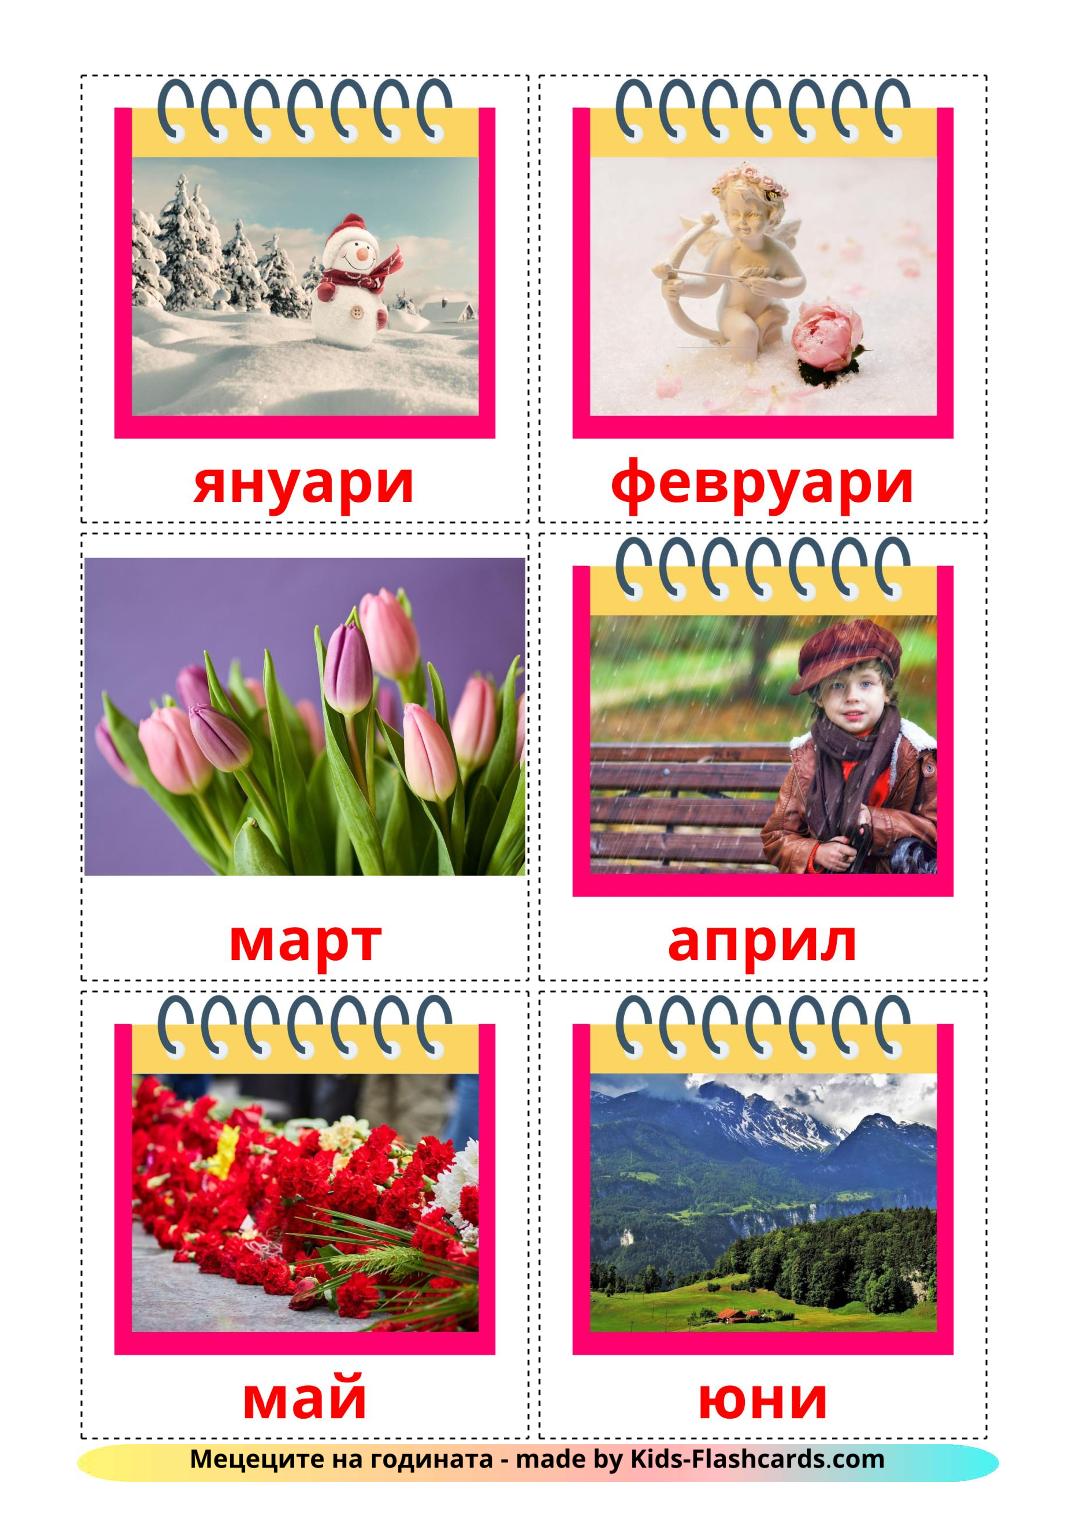 Meses del año - 12 fichas de búlgaro para imprimir gratis 